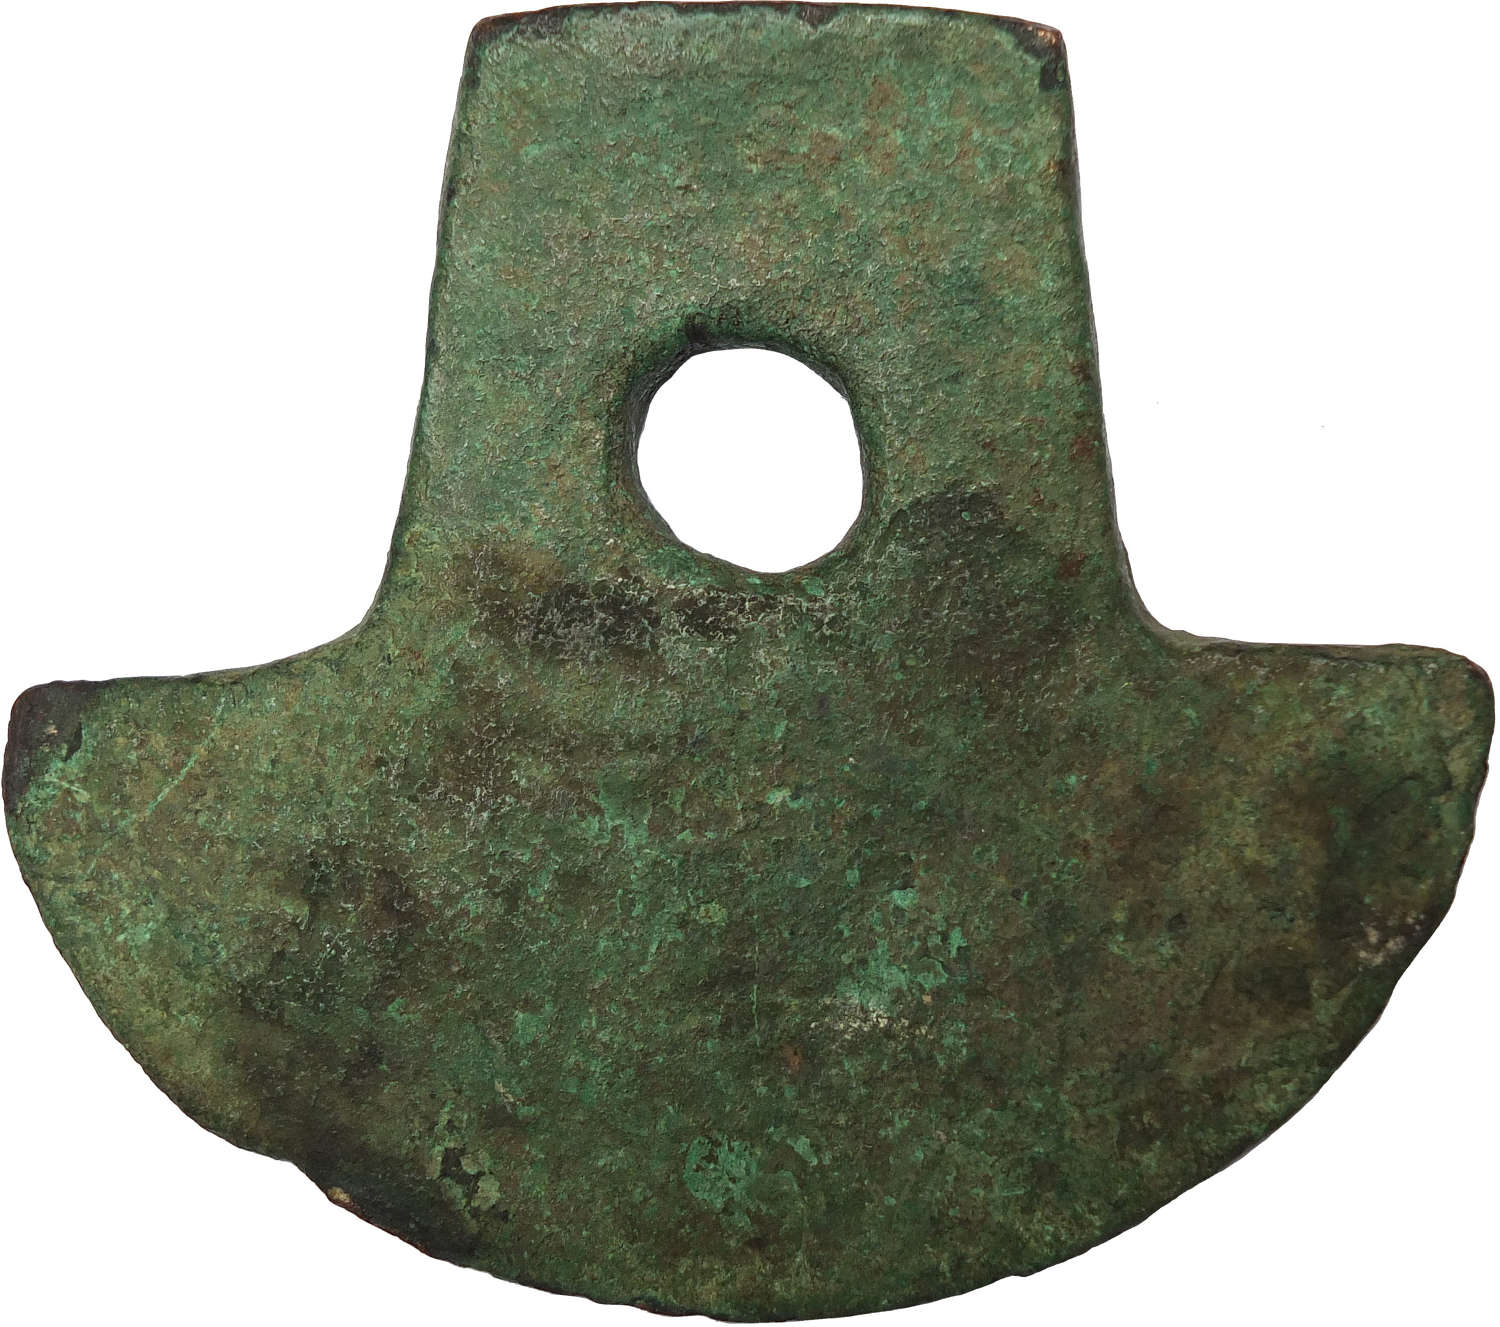 A Precolumbian bronze axehead from Ecuador, c. 12th-15th Century A.D.